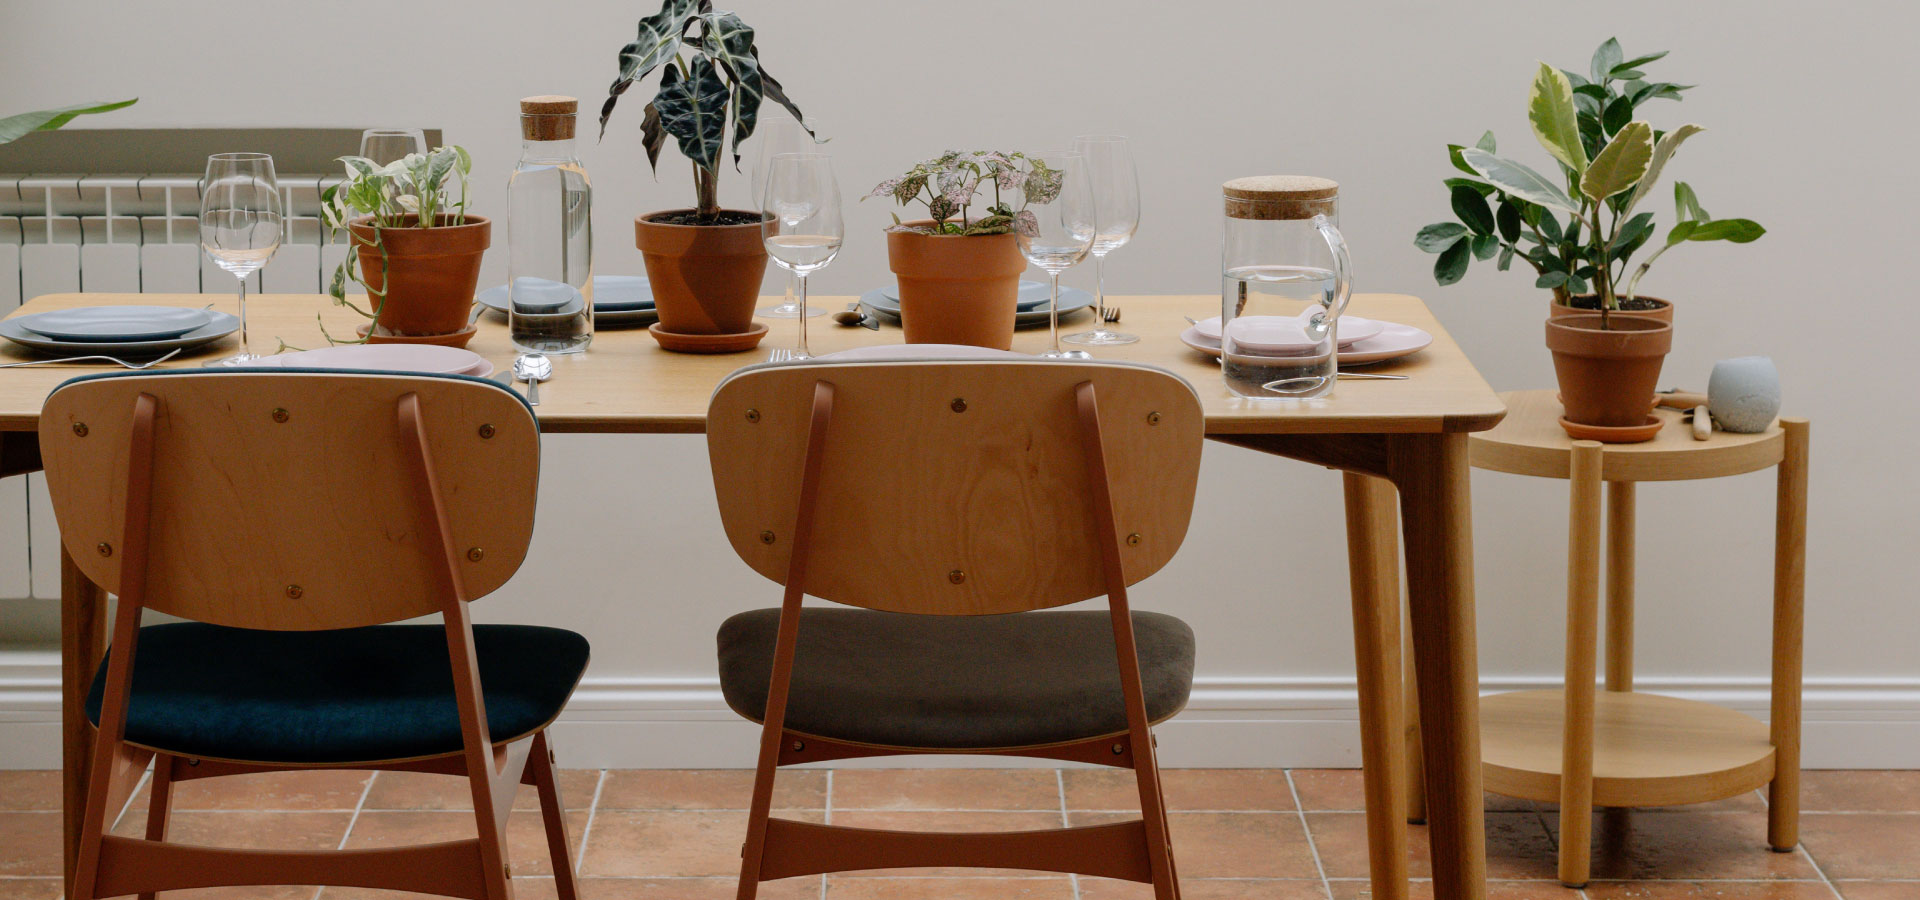 Wnętrze jadalni z widocznym drewnianym stołem i krzesłami z metalowej i drewnianej konstrukcji z tapicerowanym oparciem. Na stole widoczna zastawa i rośliny.